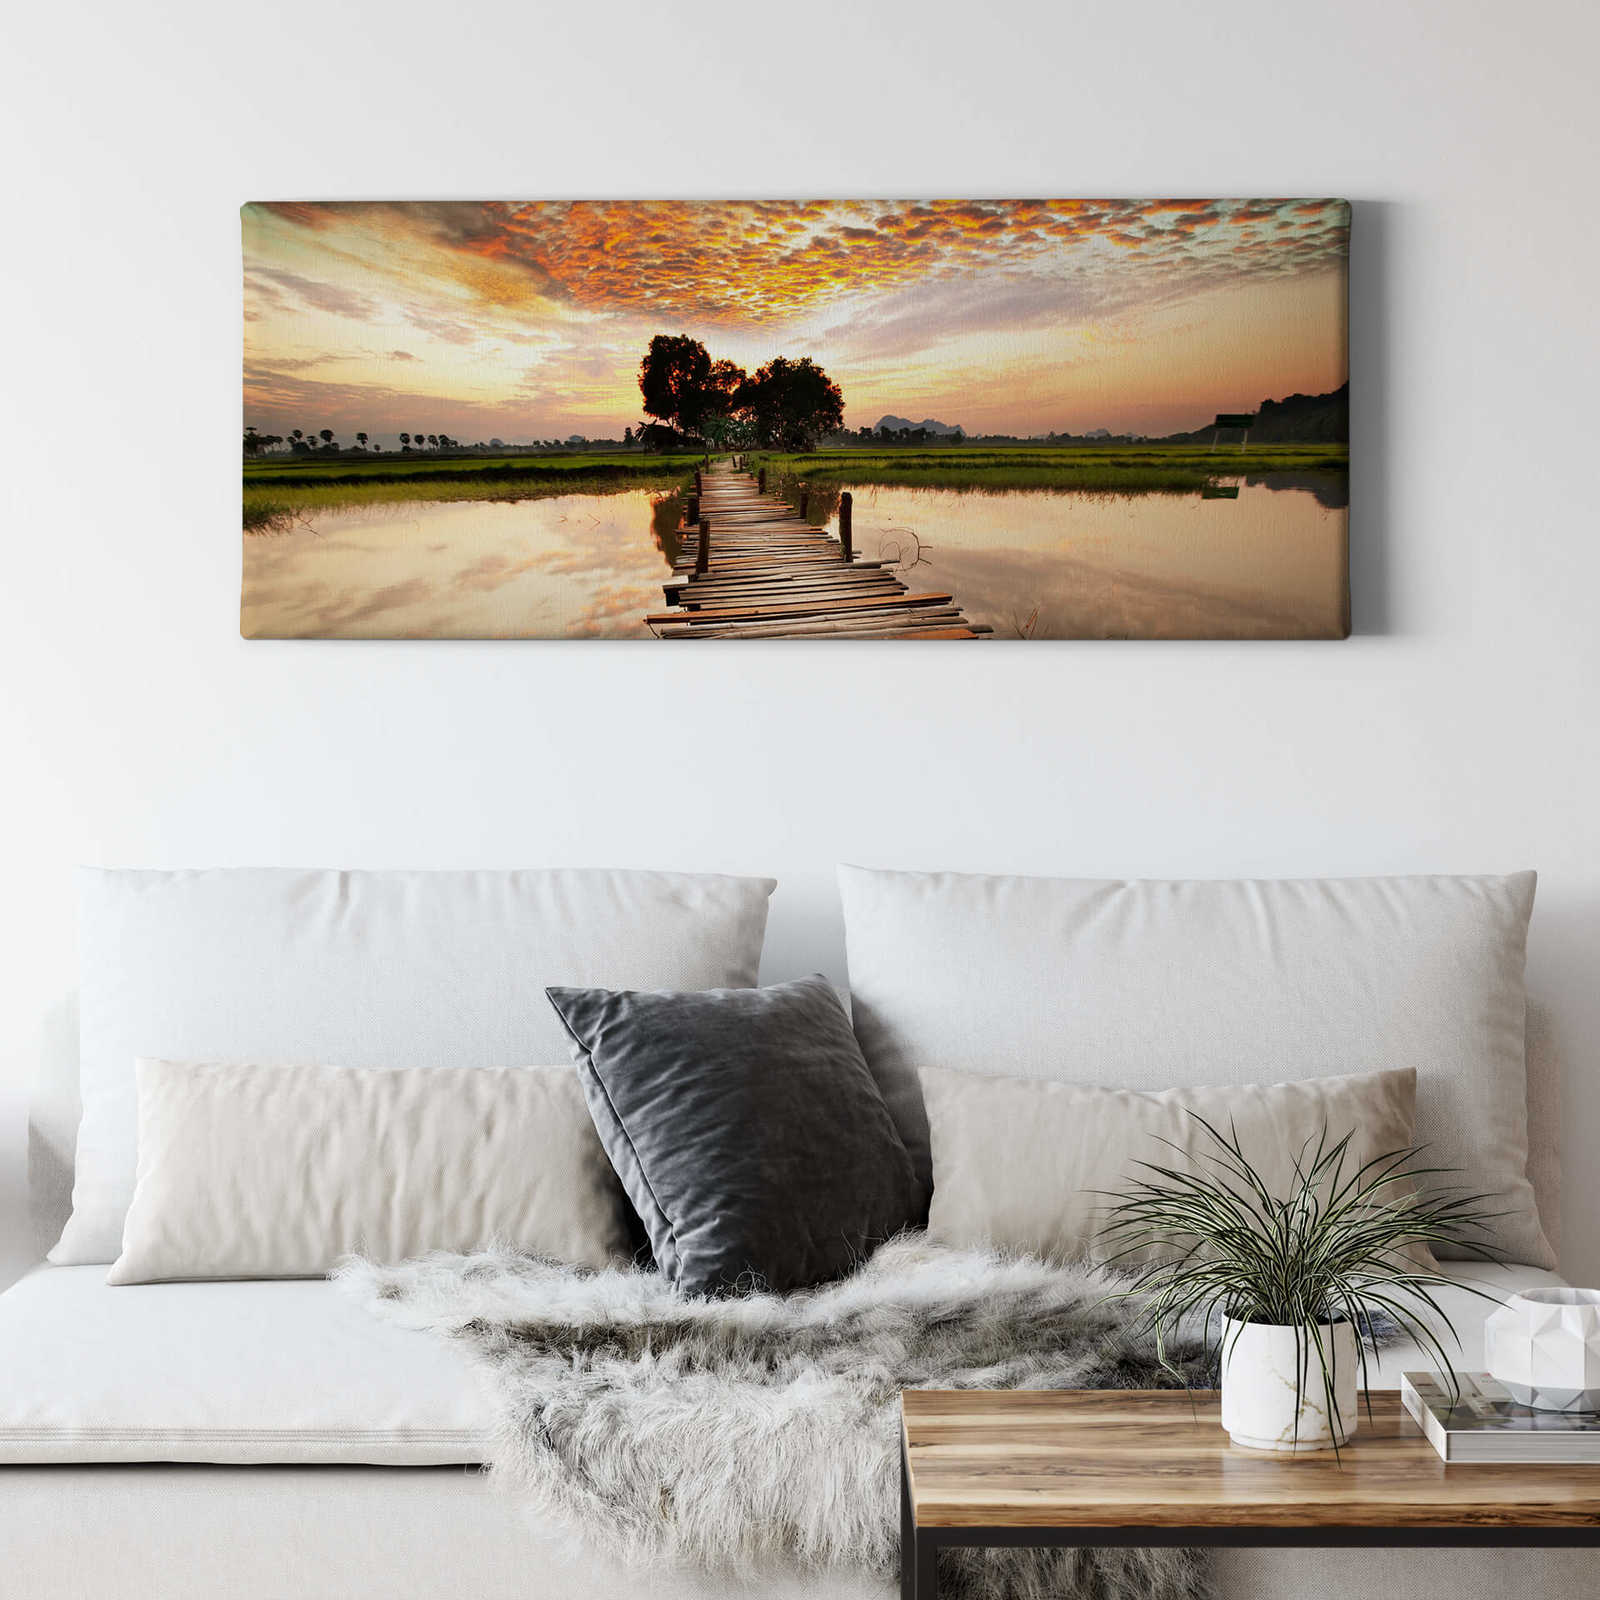             Naturel Panorama toile de l'eau en marron - 1,00 m x 0,40 m
        